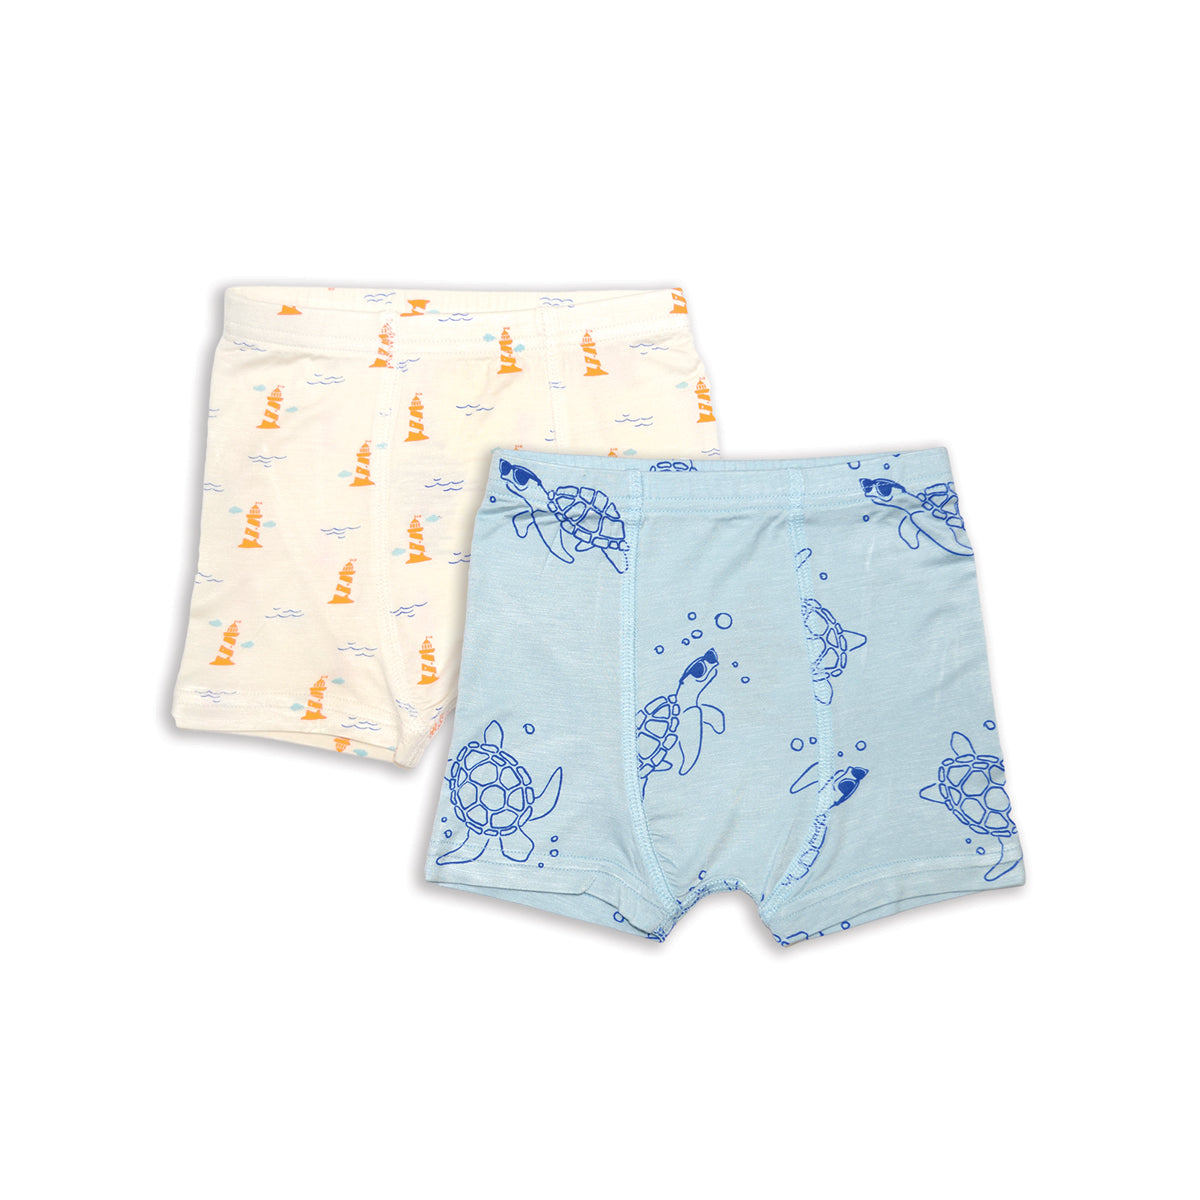 Bamboo Boyshorts Underwear 2 pack (Origami Prt/Fancy Fan Prt